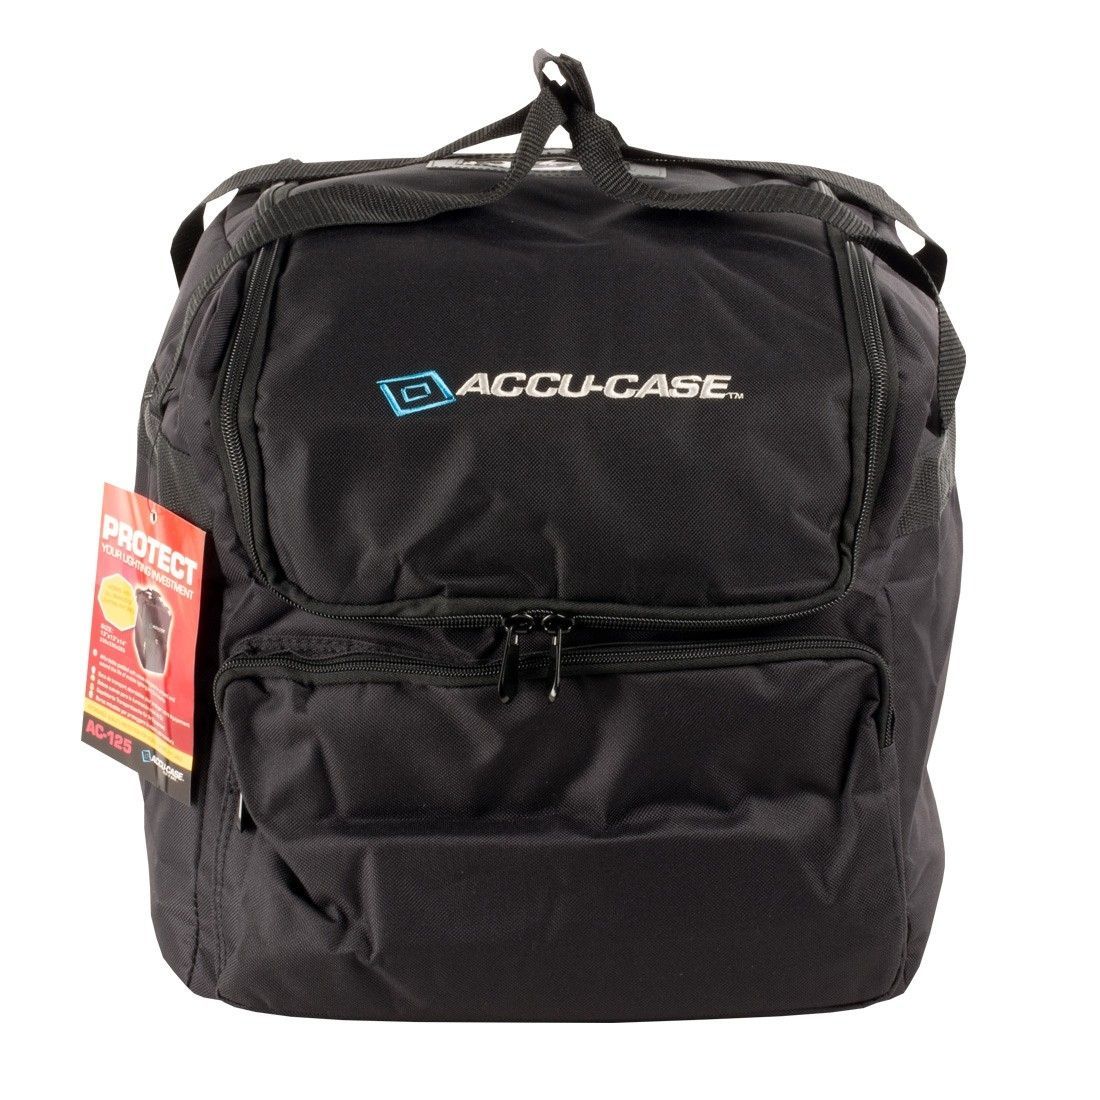 Accu-Case ASC-AC-125 Bag 330 x 330 x 355mm